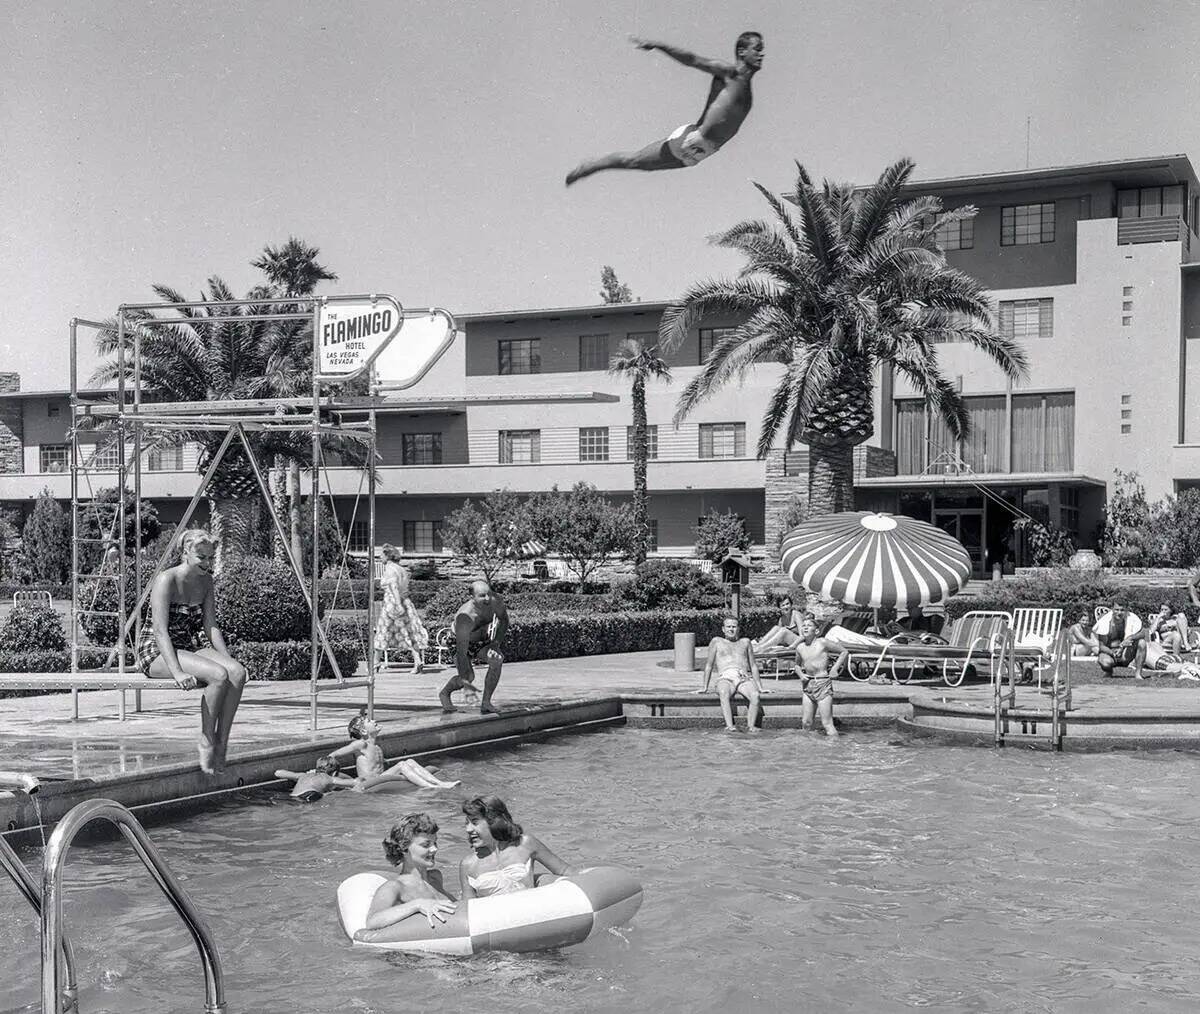 La piscina del Flamingo el 22 de junio de 1953 (Las Vegas News Bureau)